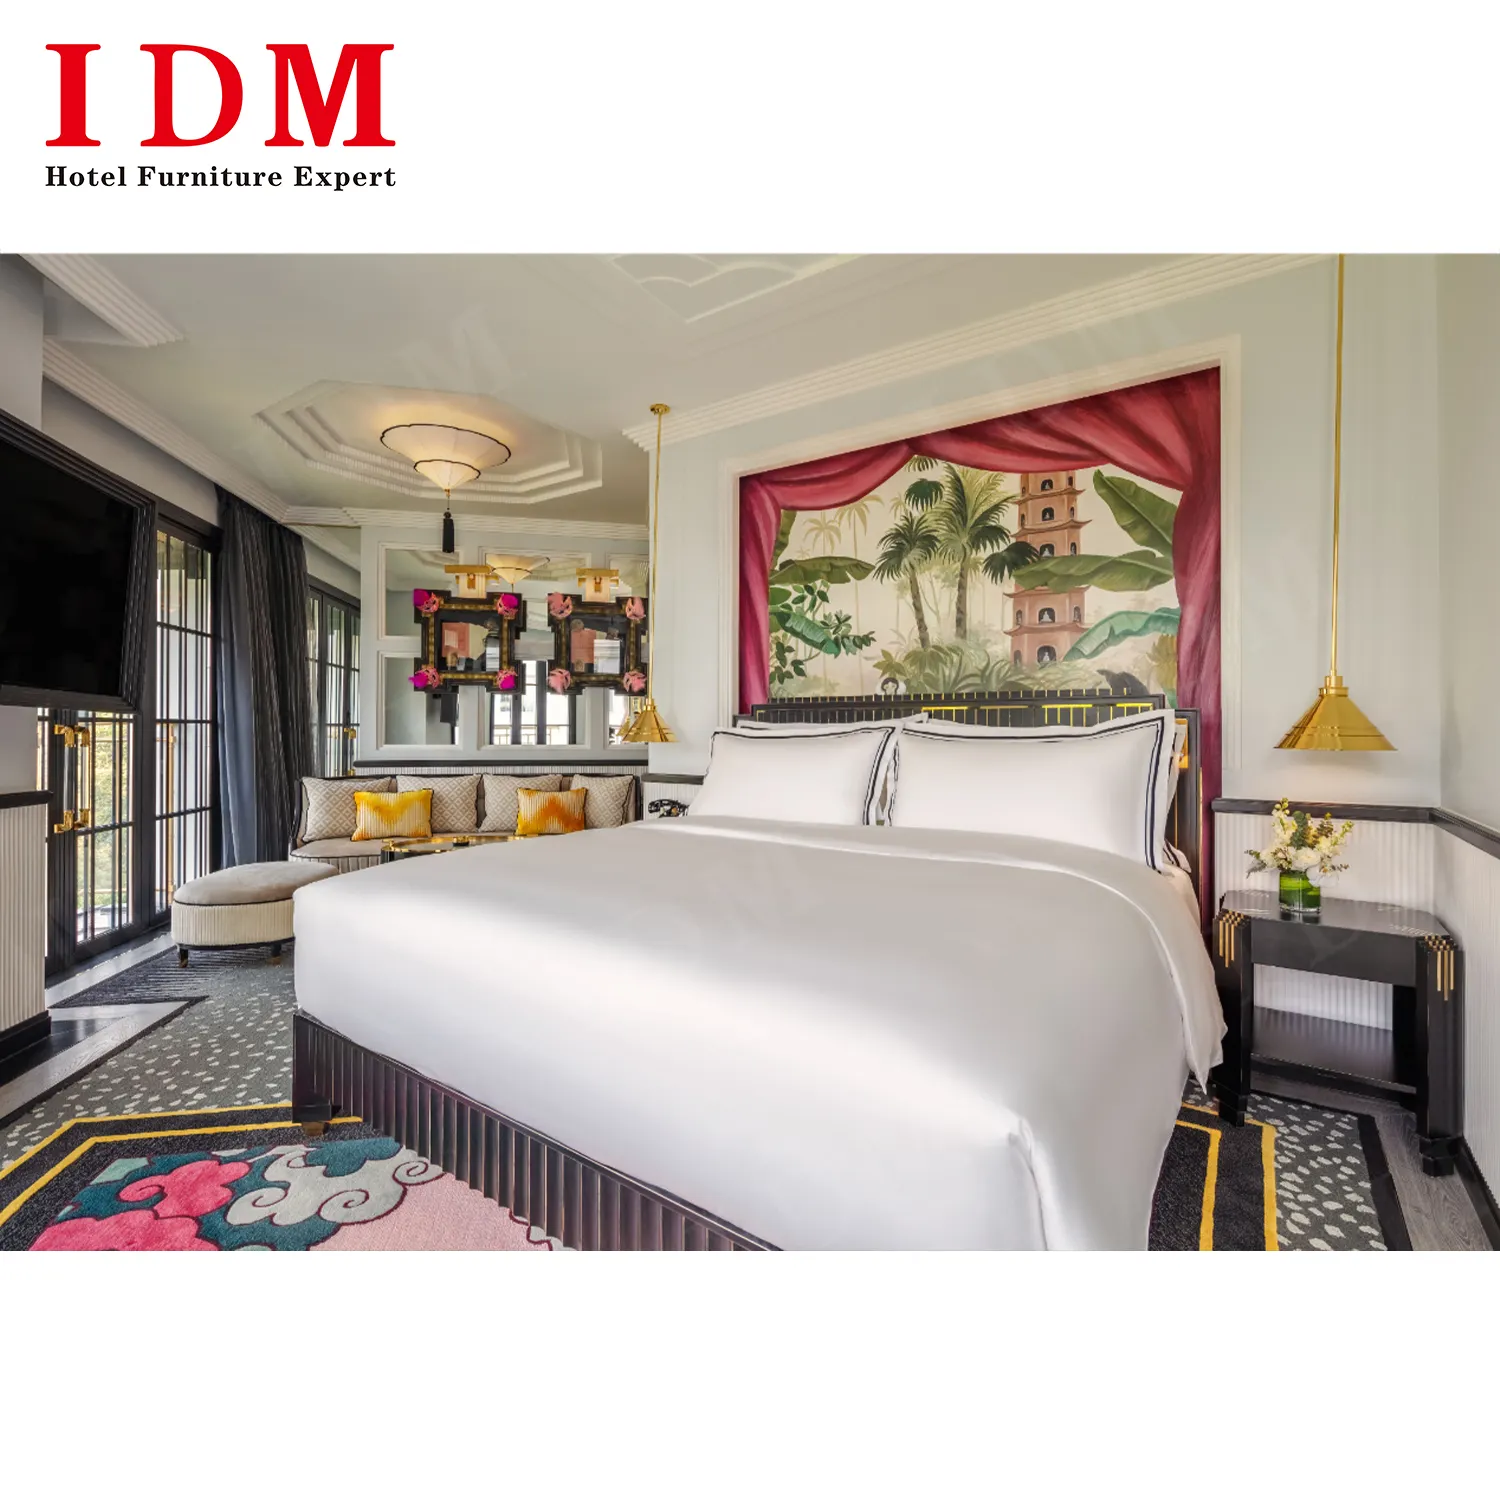 Proyecto de hospitalidad de lujo Hotel Diseño moderno y personalizar Juegos de dormitorio de 5 estrellas contemporáneos Muebles